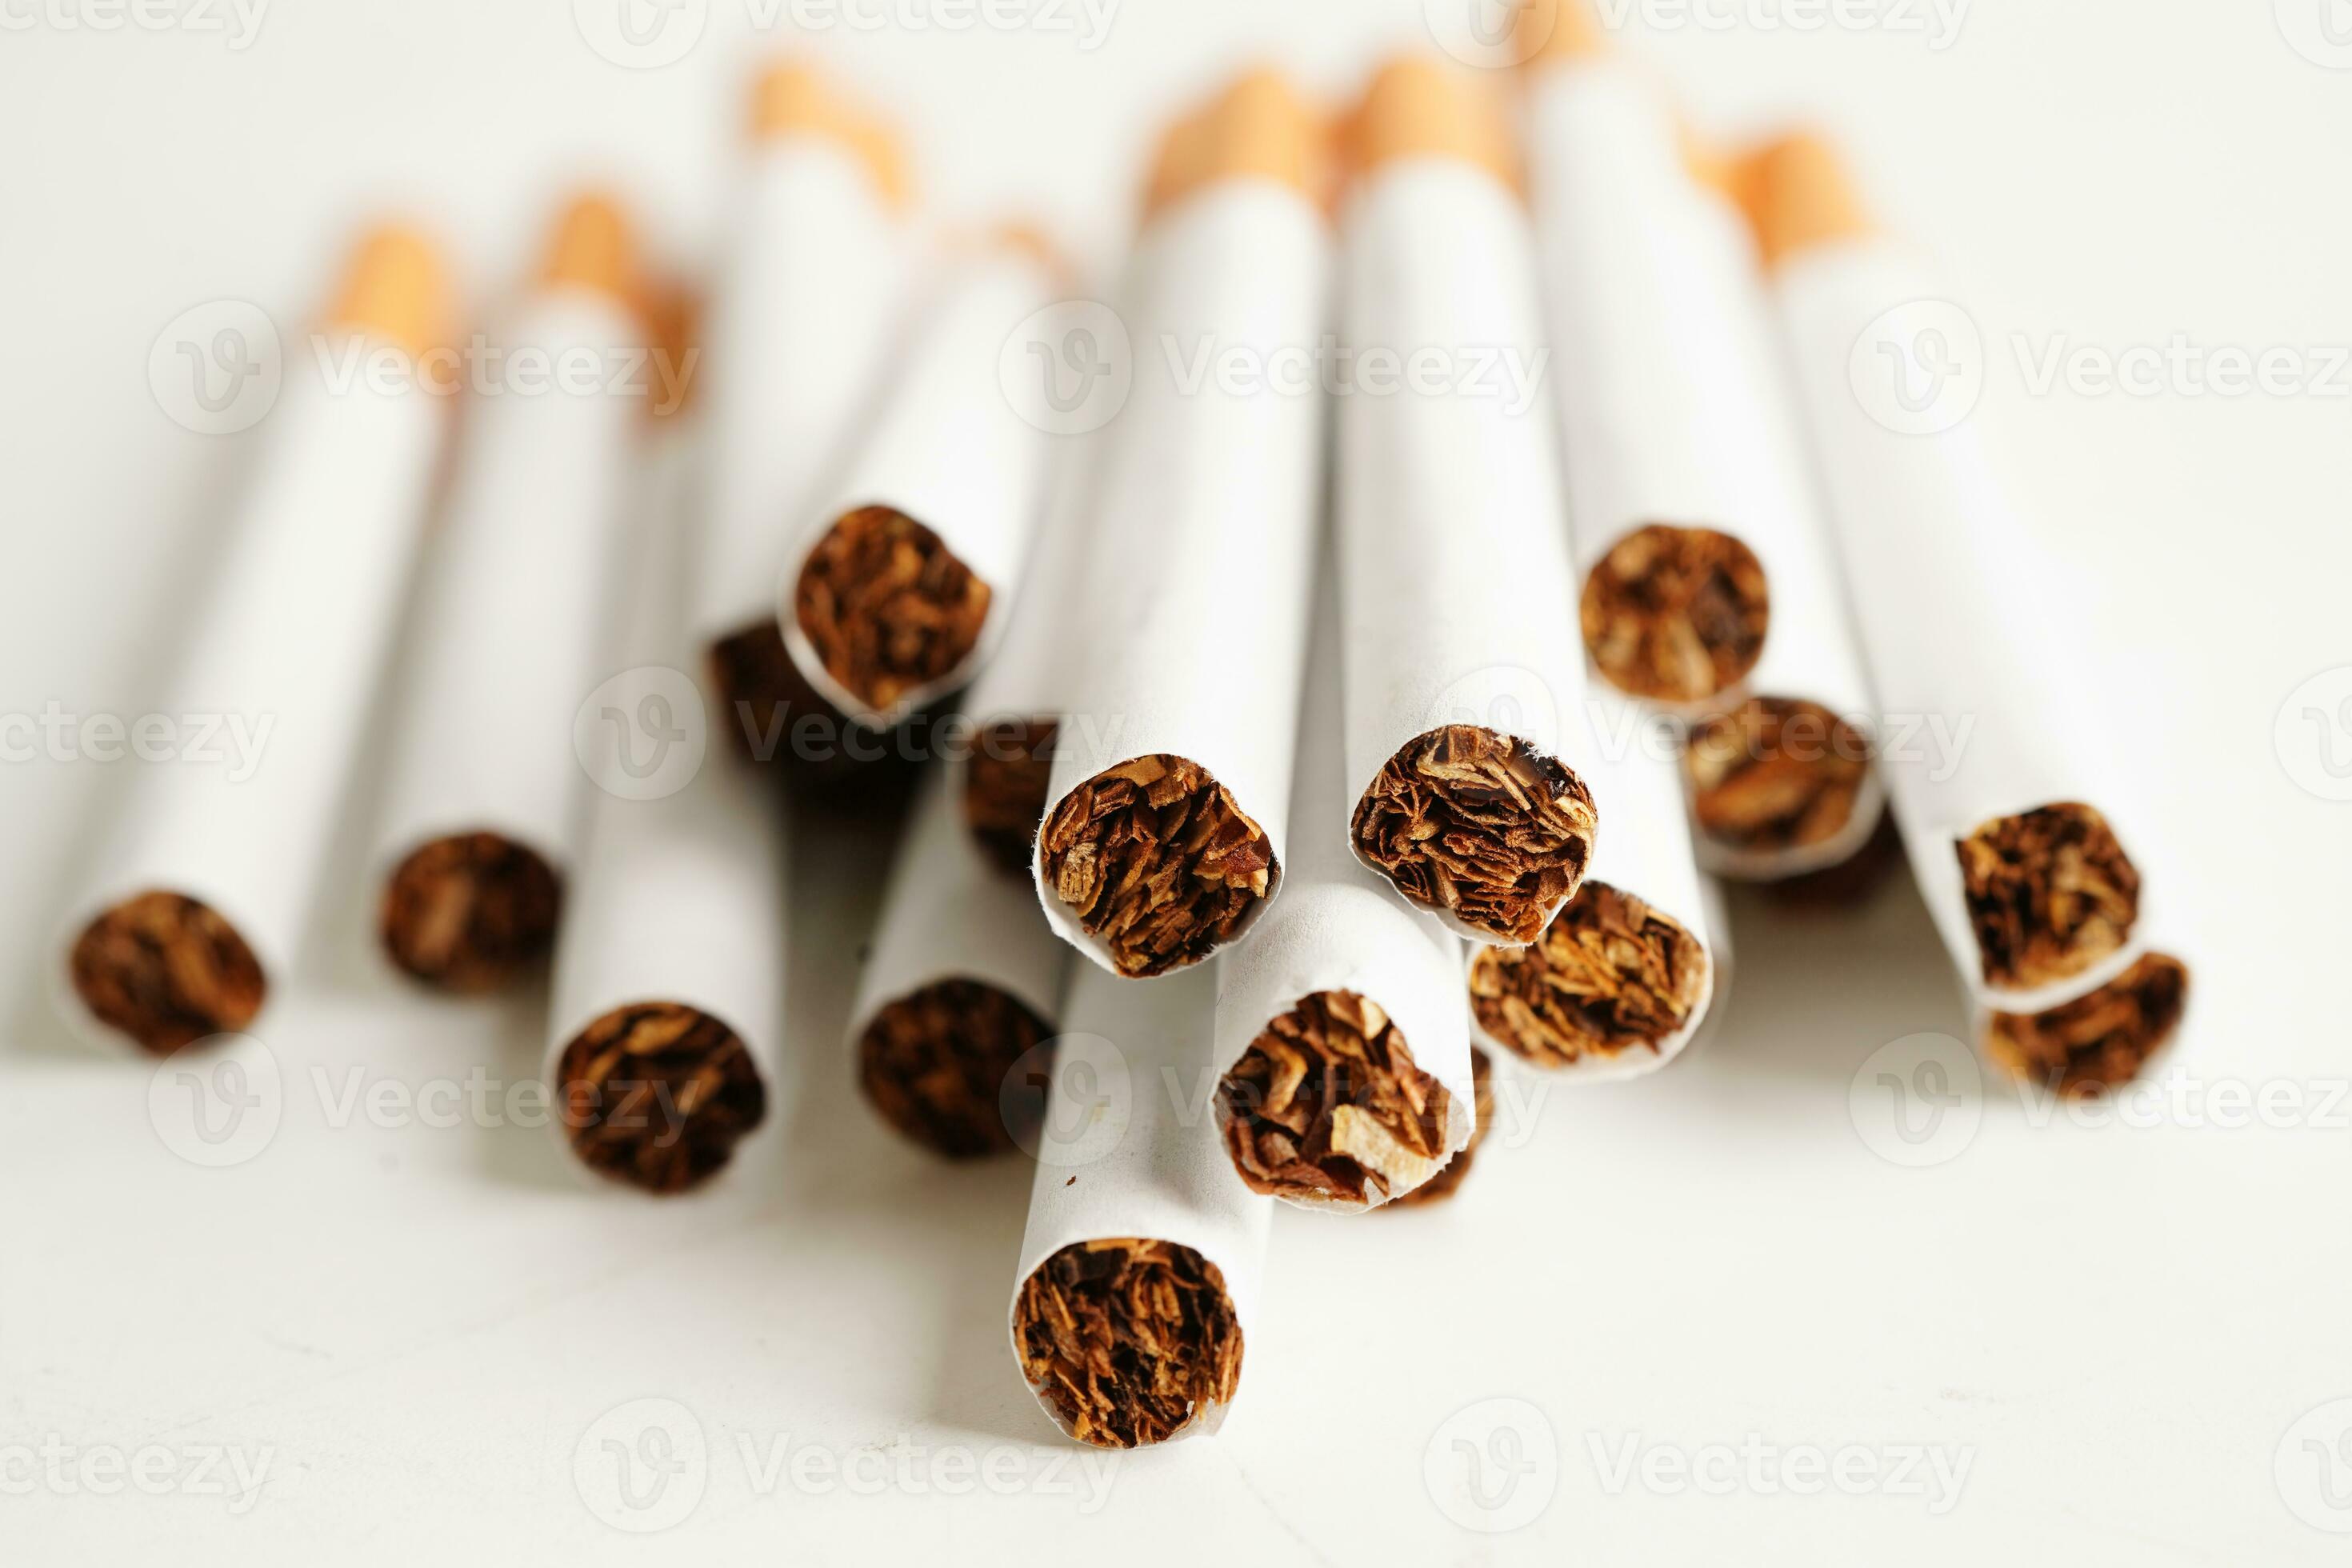 cigarette, tabac à rouler en papier avec tube filtrant, concept